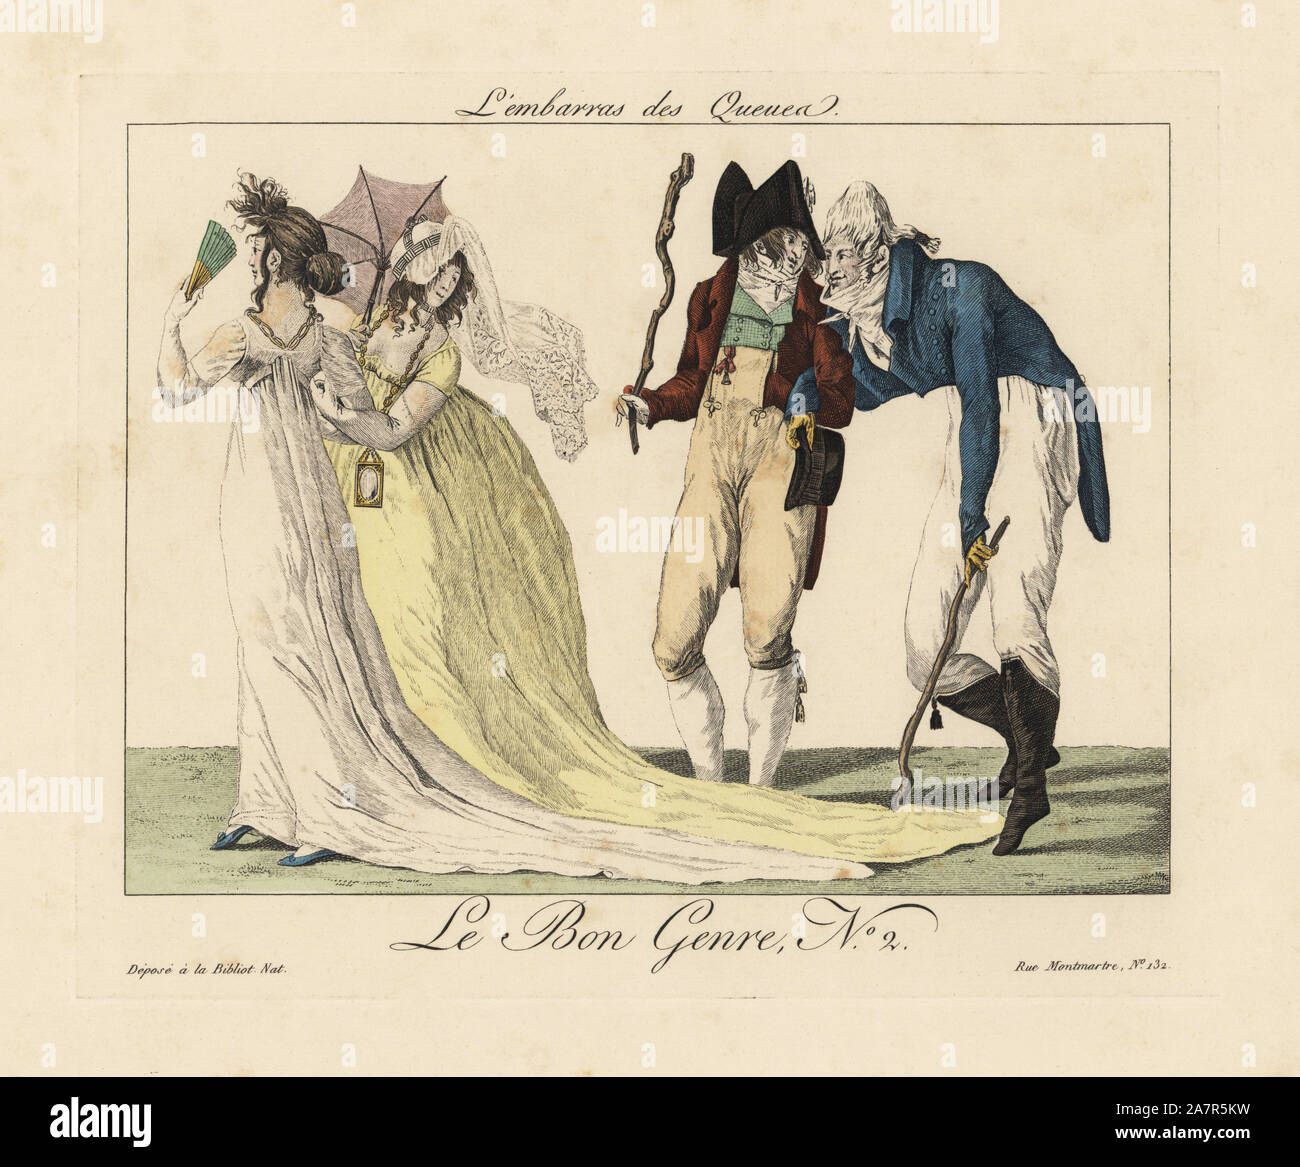 Zwei incroyables (fops) mit Lanze die Promenade von zwei merveilleuses behindern, indem er die Schwänze ihrer Kleider. Man blickt zurück kokett an der lächerlichen Dandy. Papierkörbe Gravur von Pierre de la Mesangere's Le Bon Genre, Paris, 1817. Stockfoto